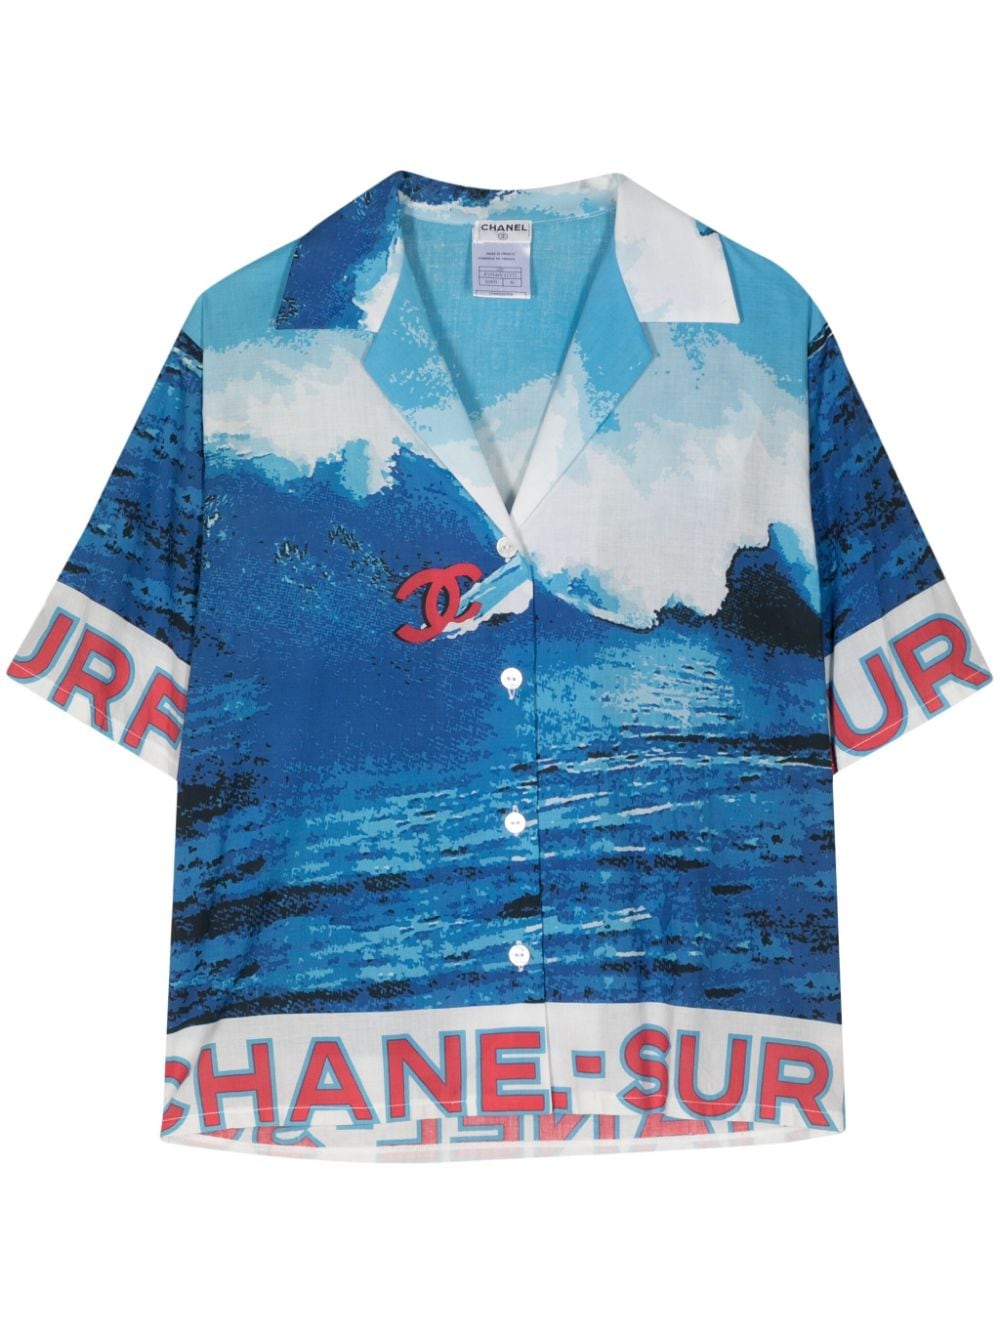 2002 Surf Line cotton shirt